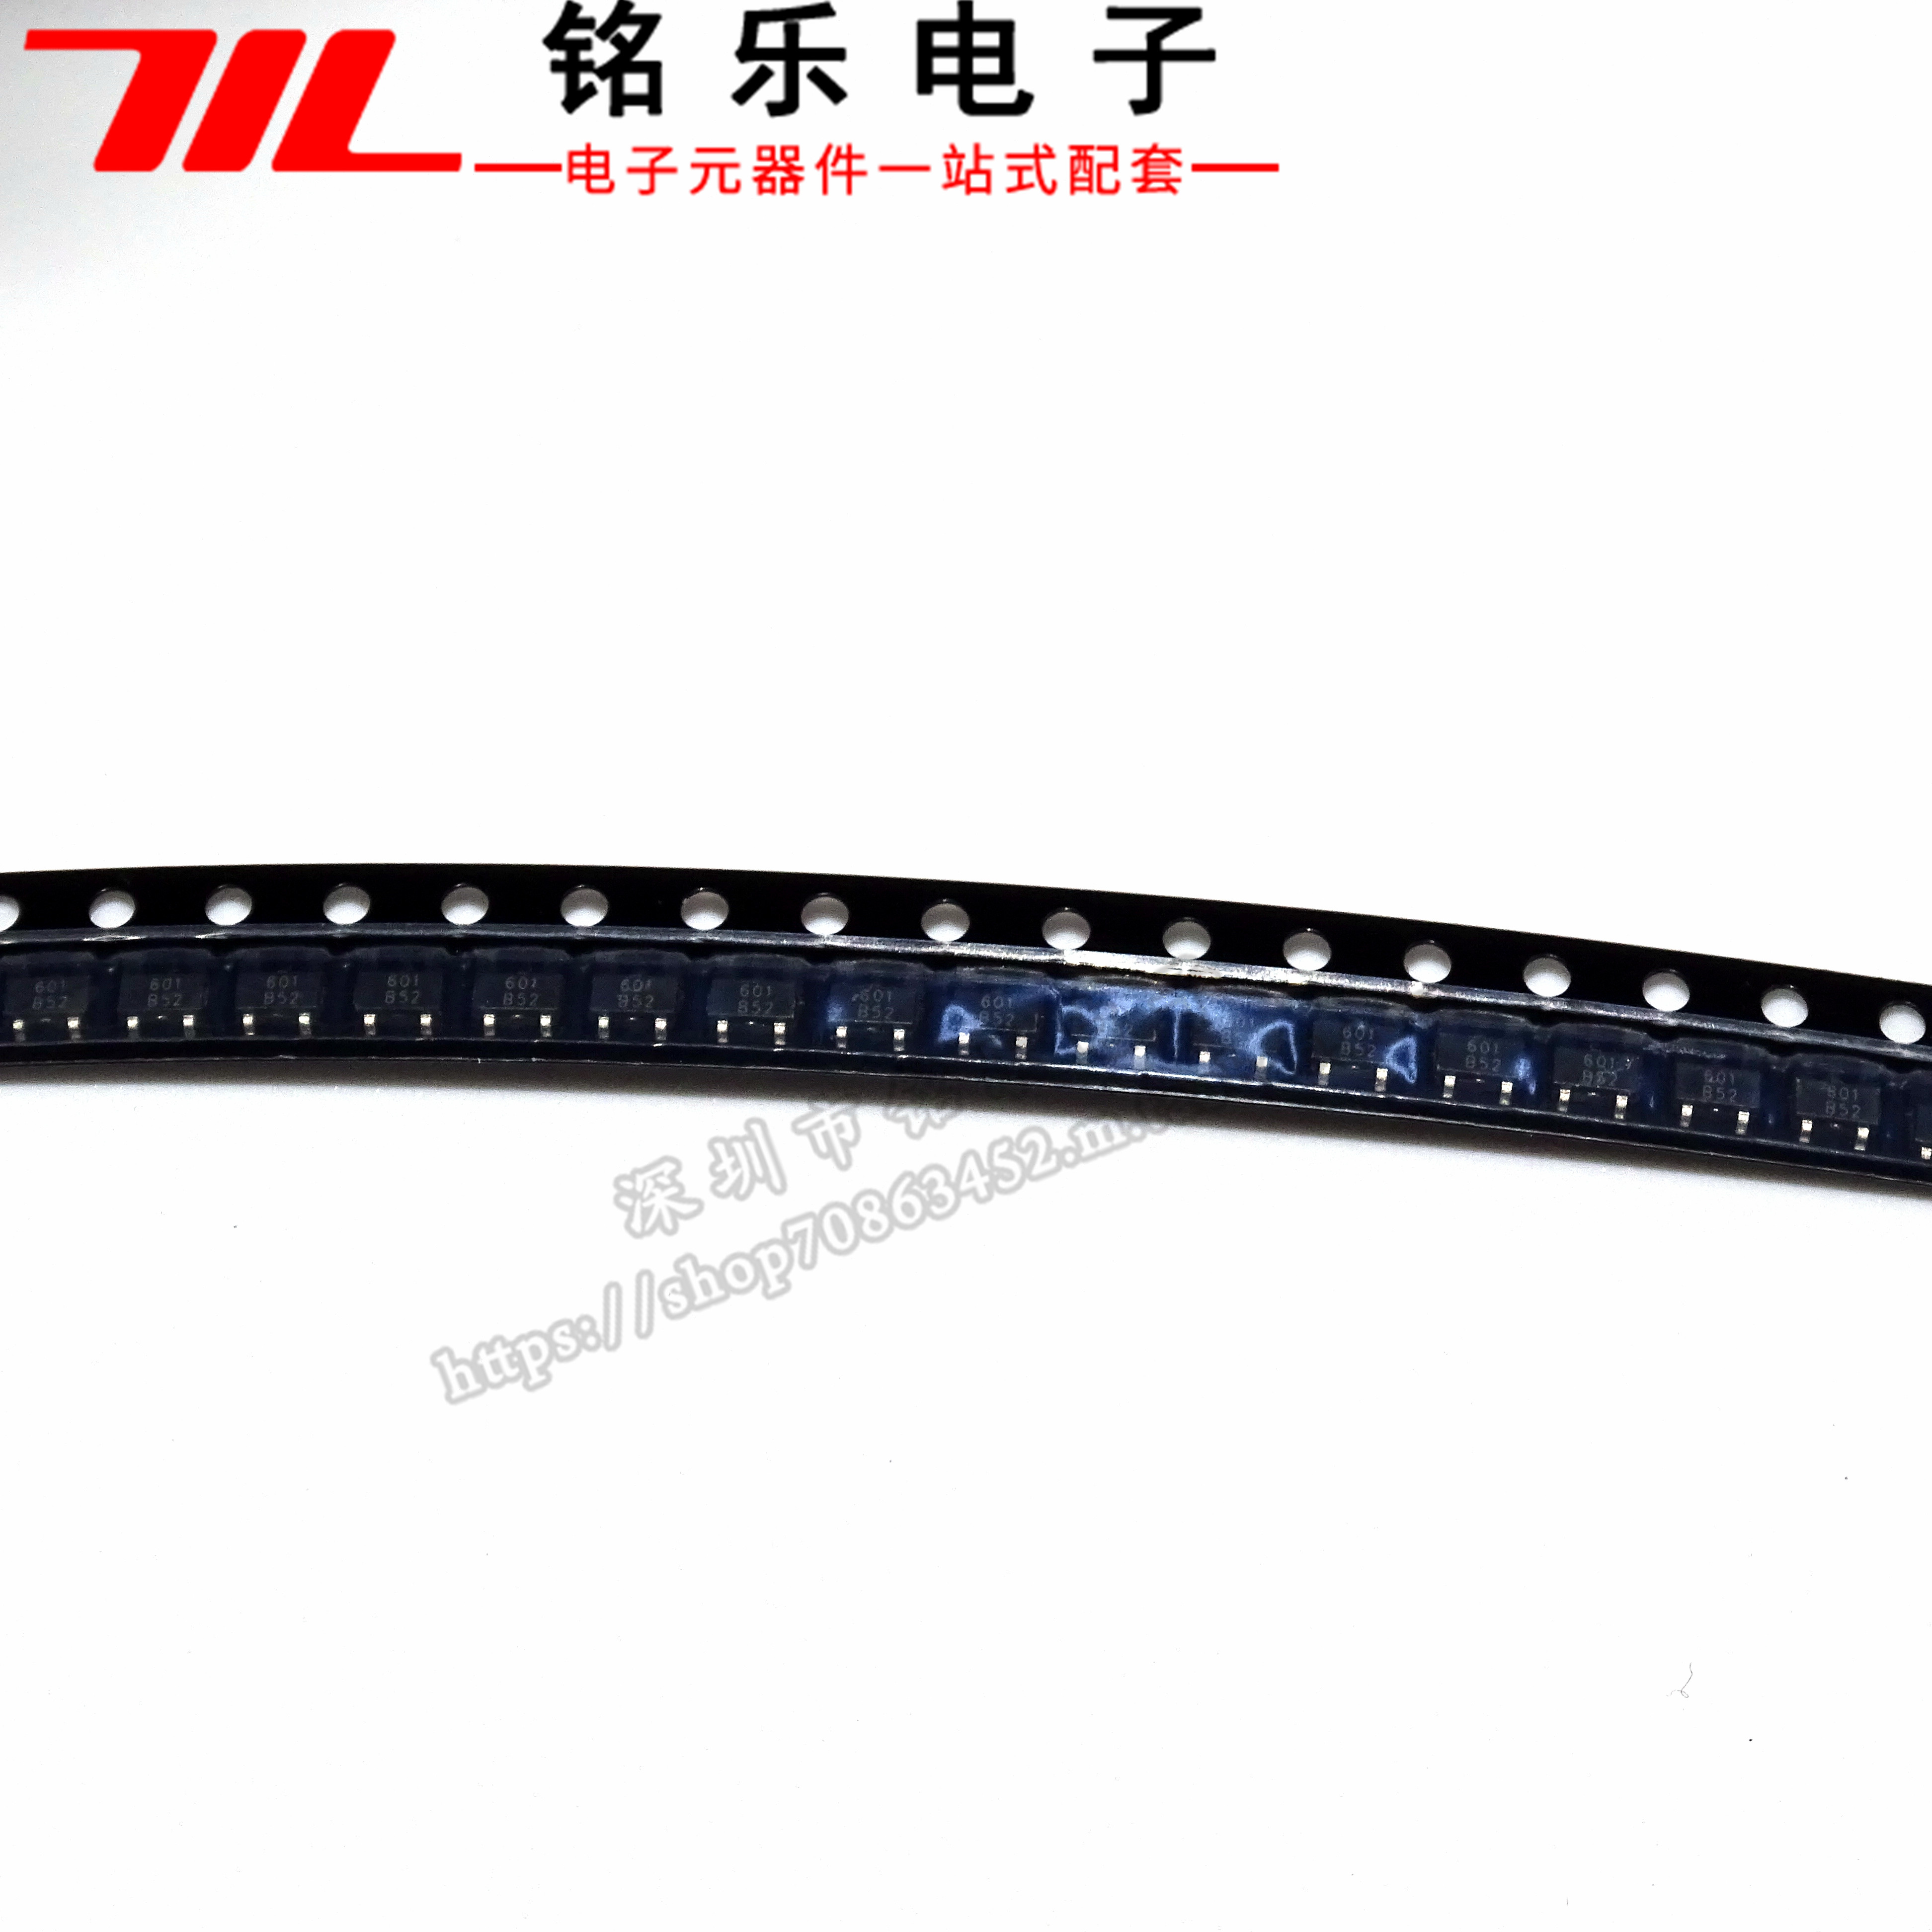 南京艾驰 霍尔传感芯片AH3601 SOT-23-3 全新原装现货